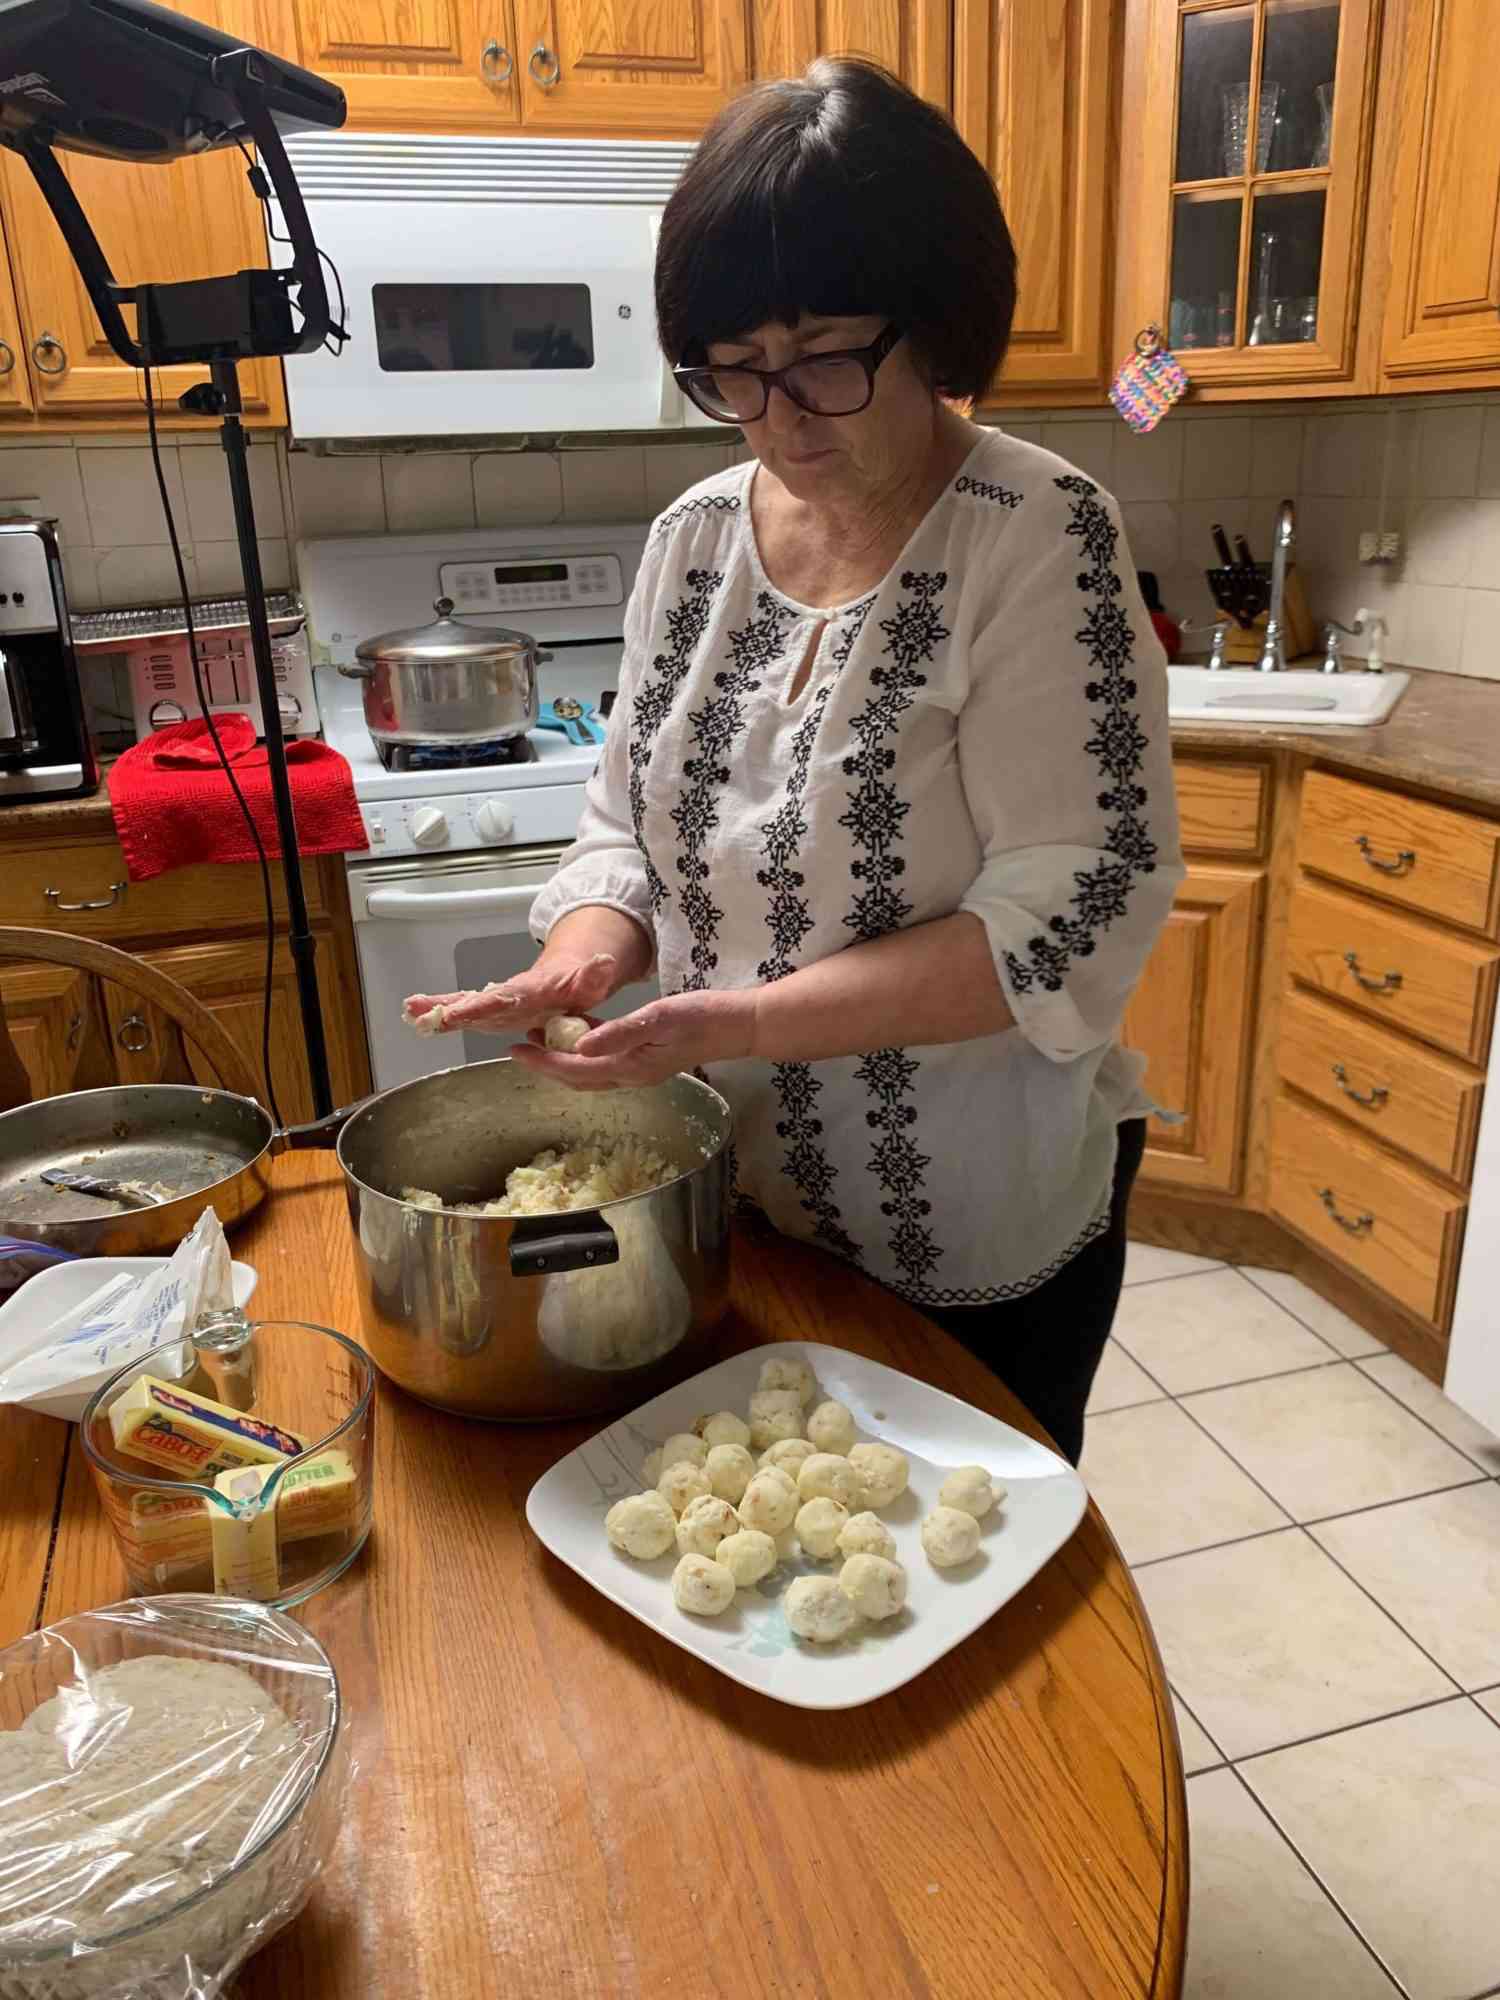 维姬的妈妈在做饺子